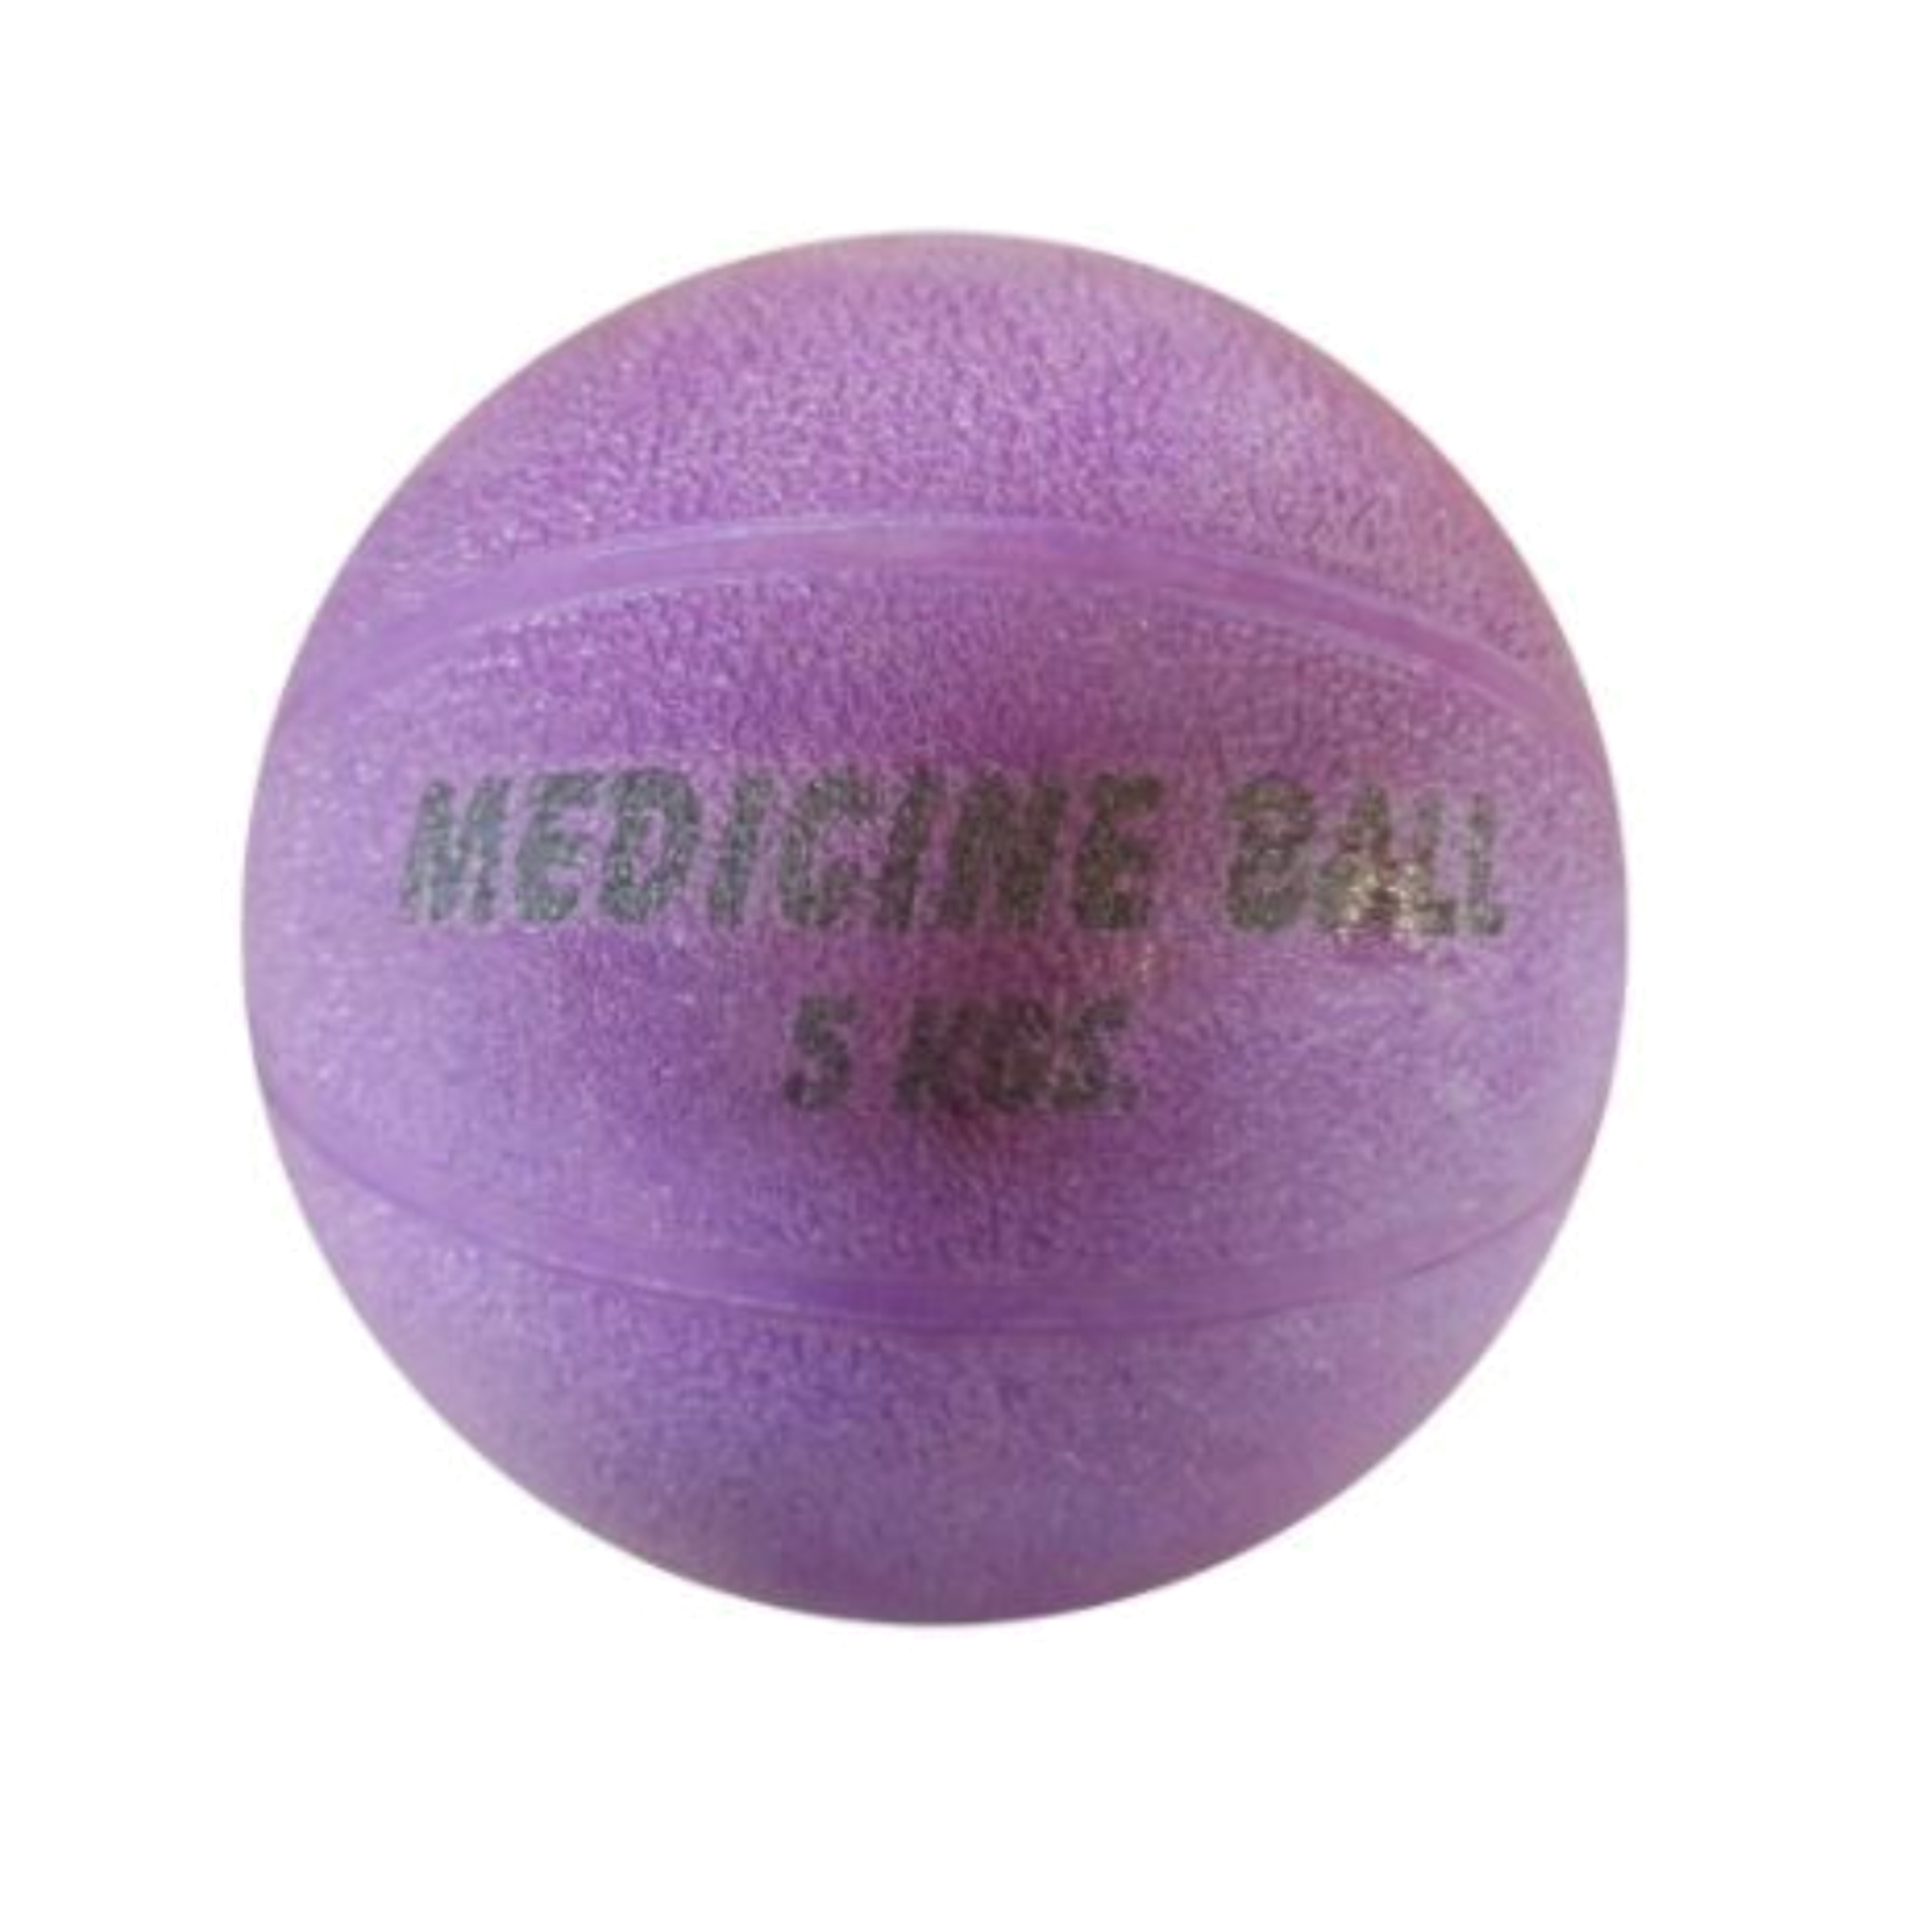 Balon Medicinal Sin Bote 5 Kilos - Morado  MKP